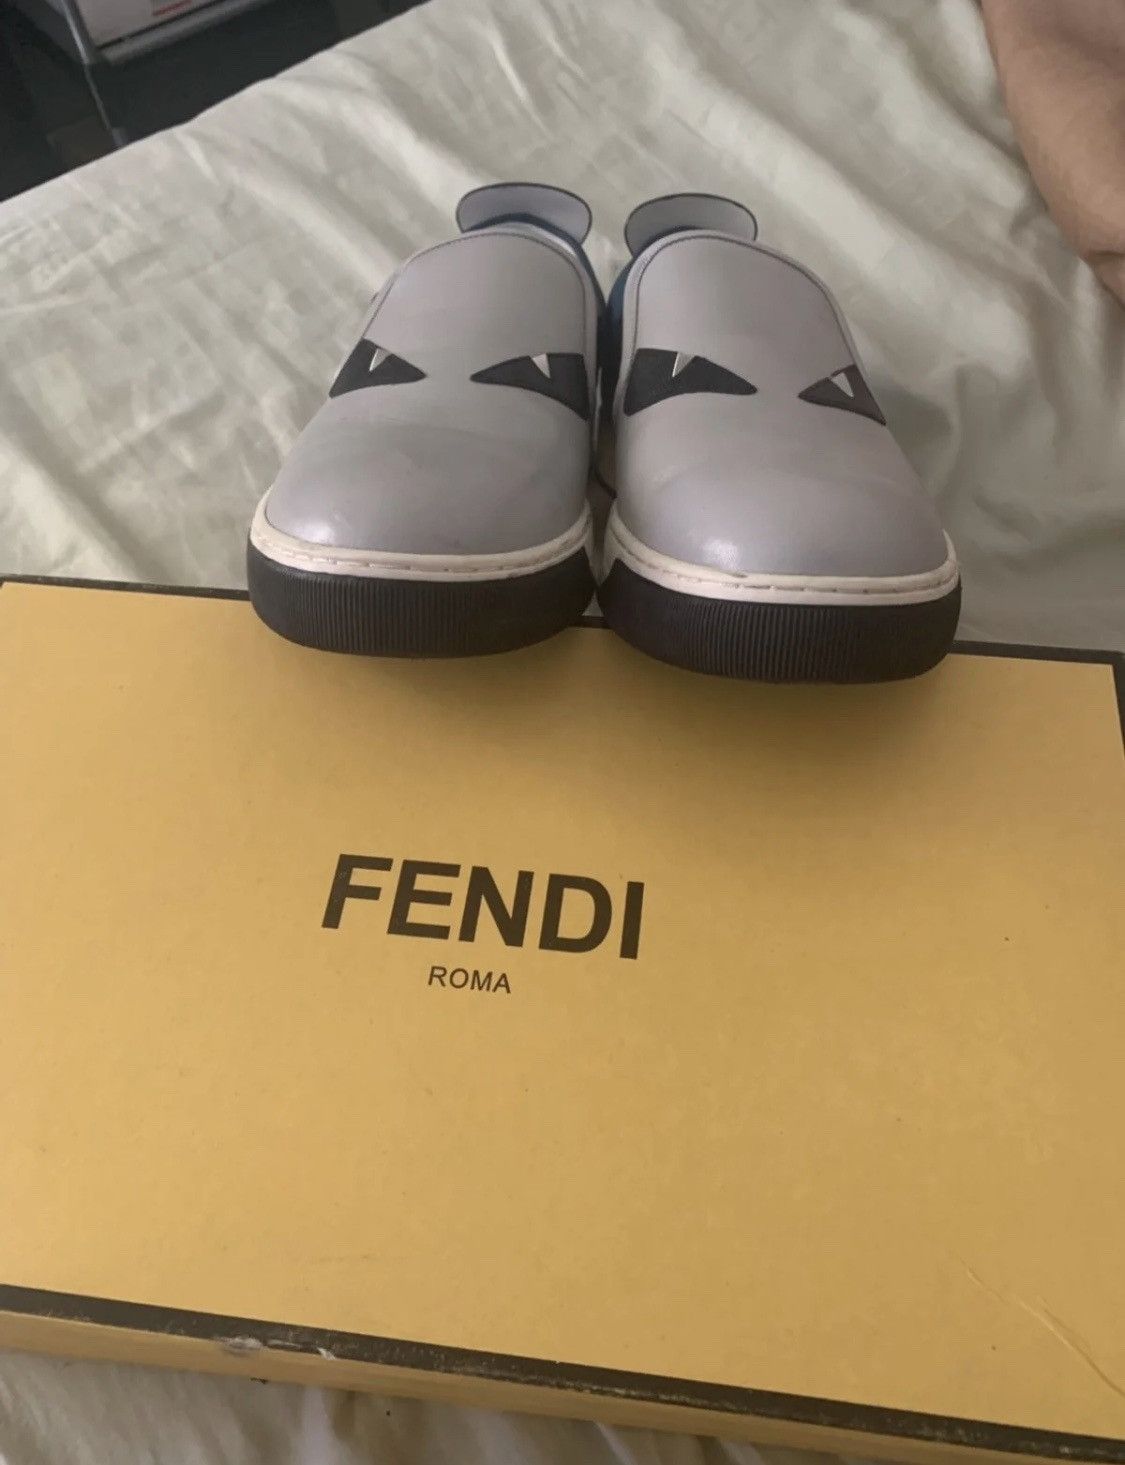 Fendi Fendi Shoes Size US 10 / EU 43 - 2 Preview